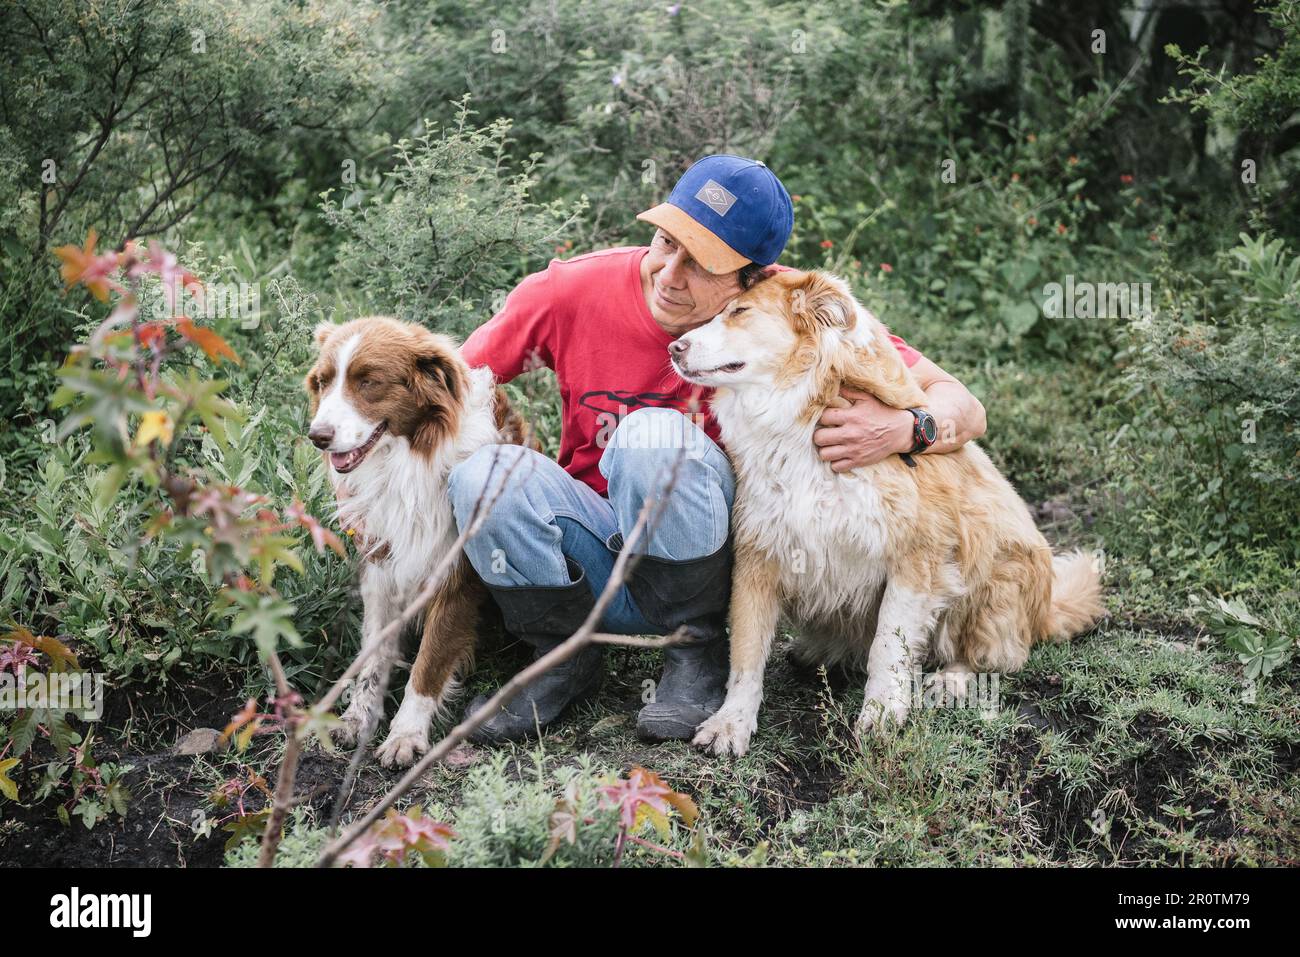 Ein weißer Mann, der sich mit seinen Hundebegleitern in einen liebevollen Moment verwickelt hat Stockfoto